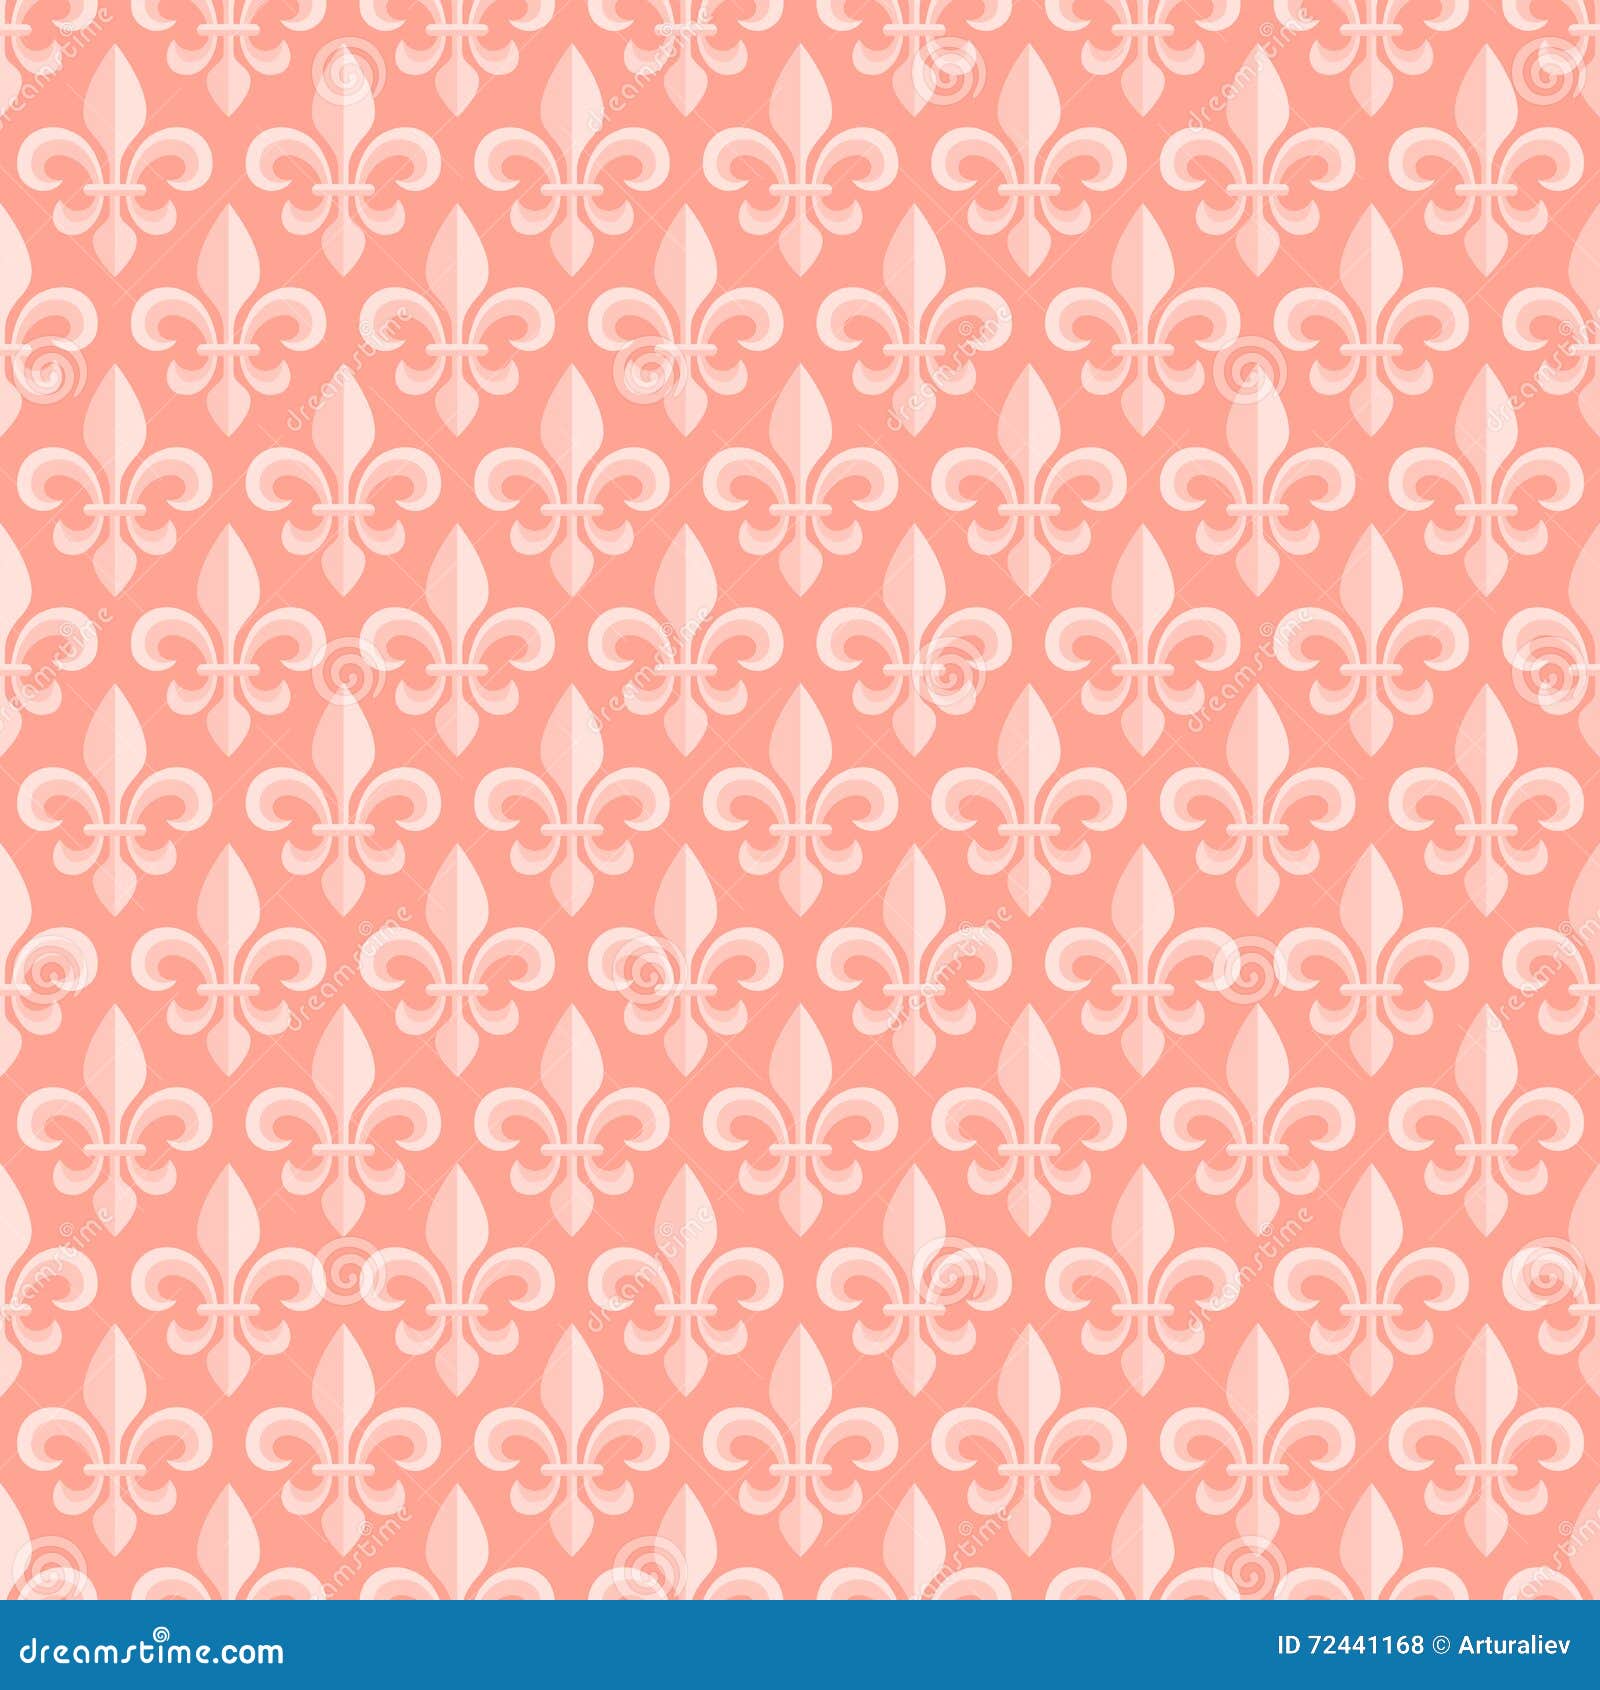 Nếu bạn đam mê những họa tiết hoa lụa sang trọng, Royal Lily Seamless Pattern là sự lựa chọn hoàn hảo cho gian phòng của bạn. Với sắc trắng tinh tế và những đường nét hoa lụa một màu trên nền màu xanh rêu, họa tiết này chắc chắn sẽ làm cho không gian phòng thêm độc đáo và thanh lịch.